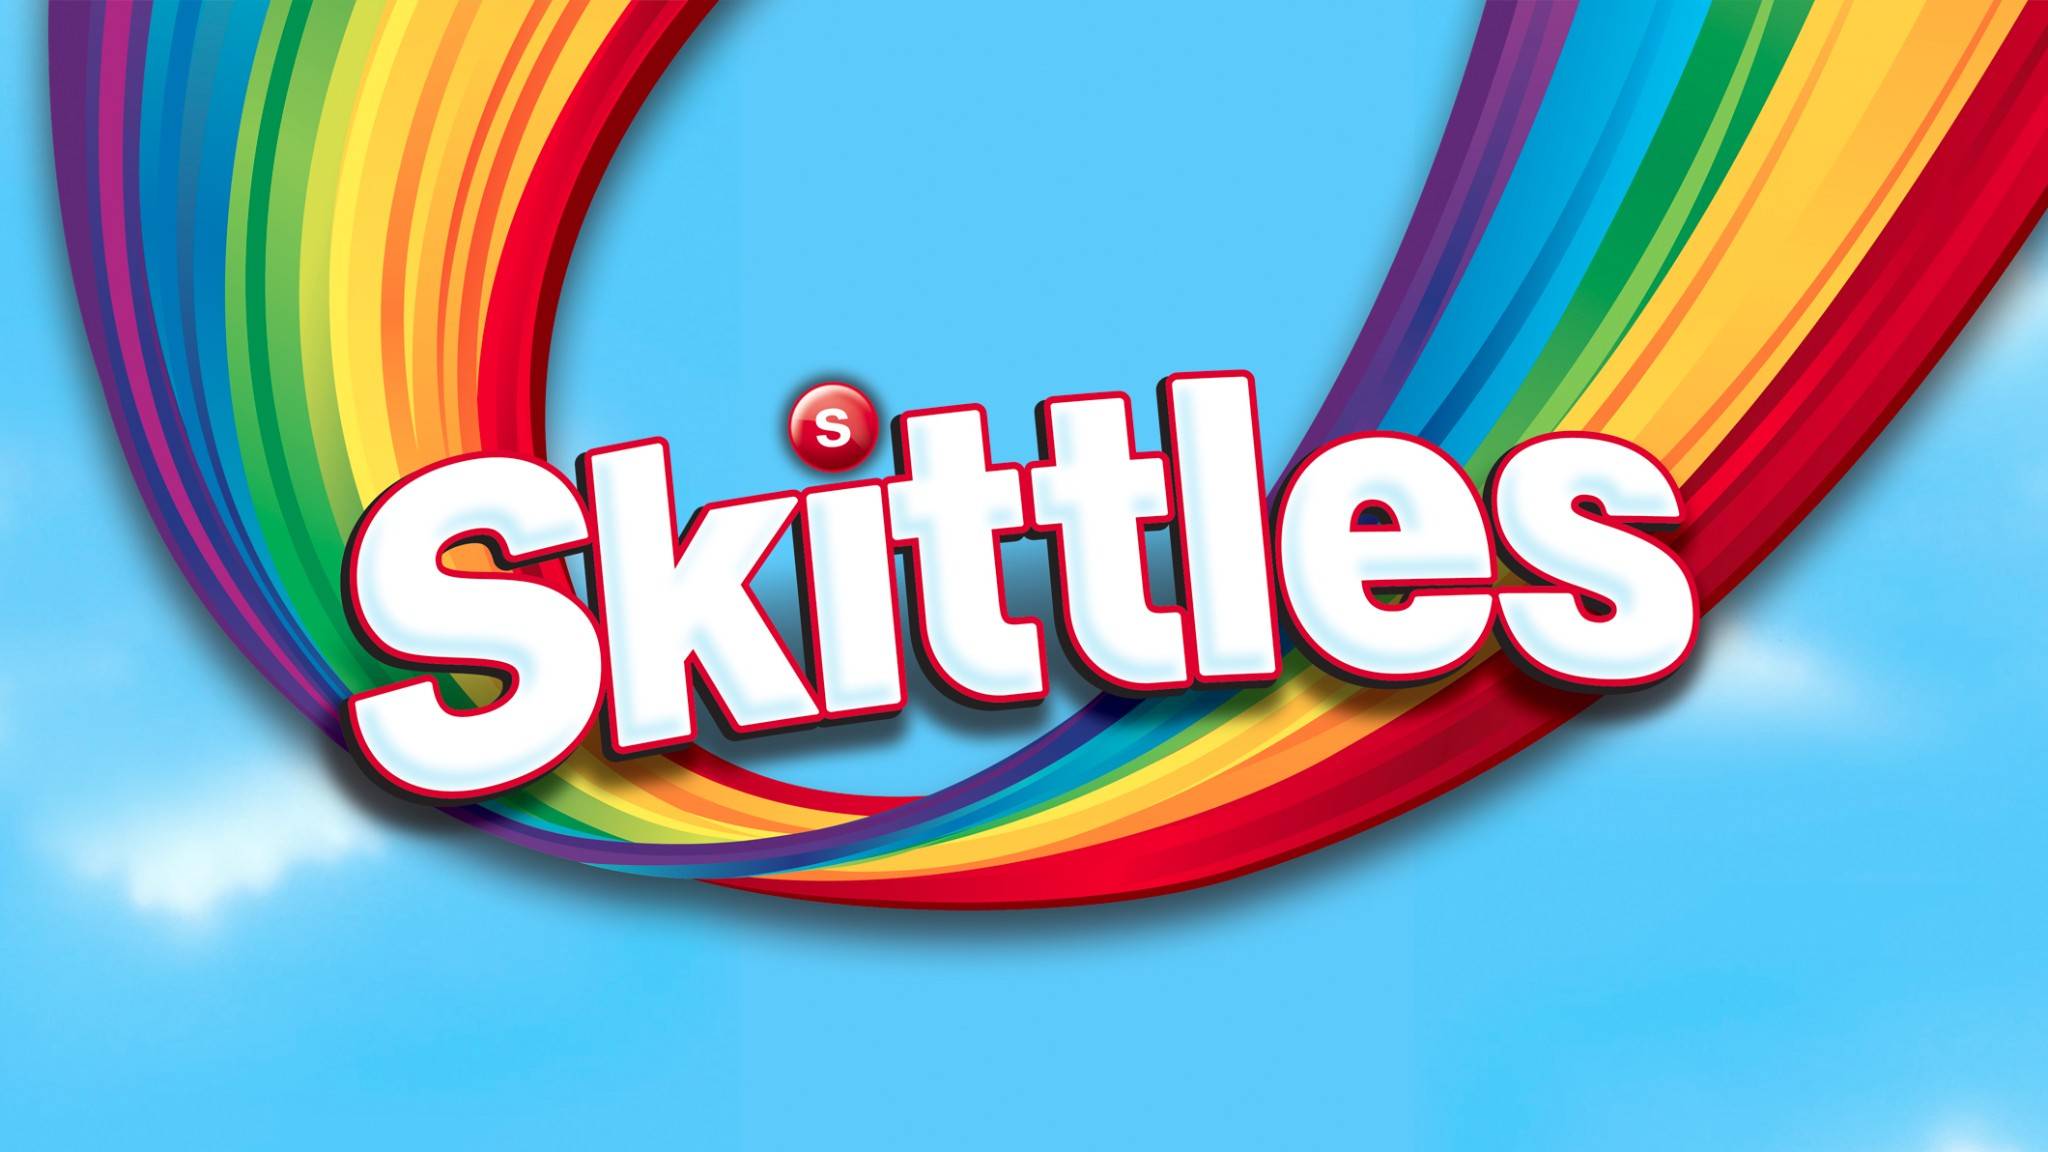 Skittles Wallpaper, 47 Desktop Image of Skittles